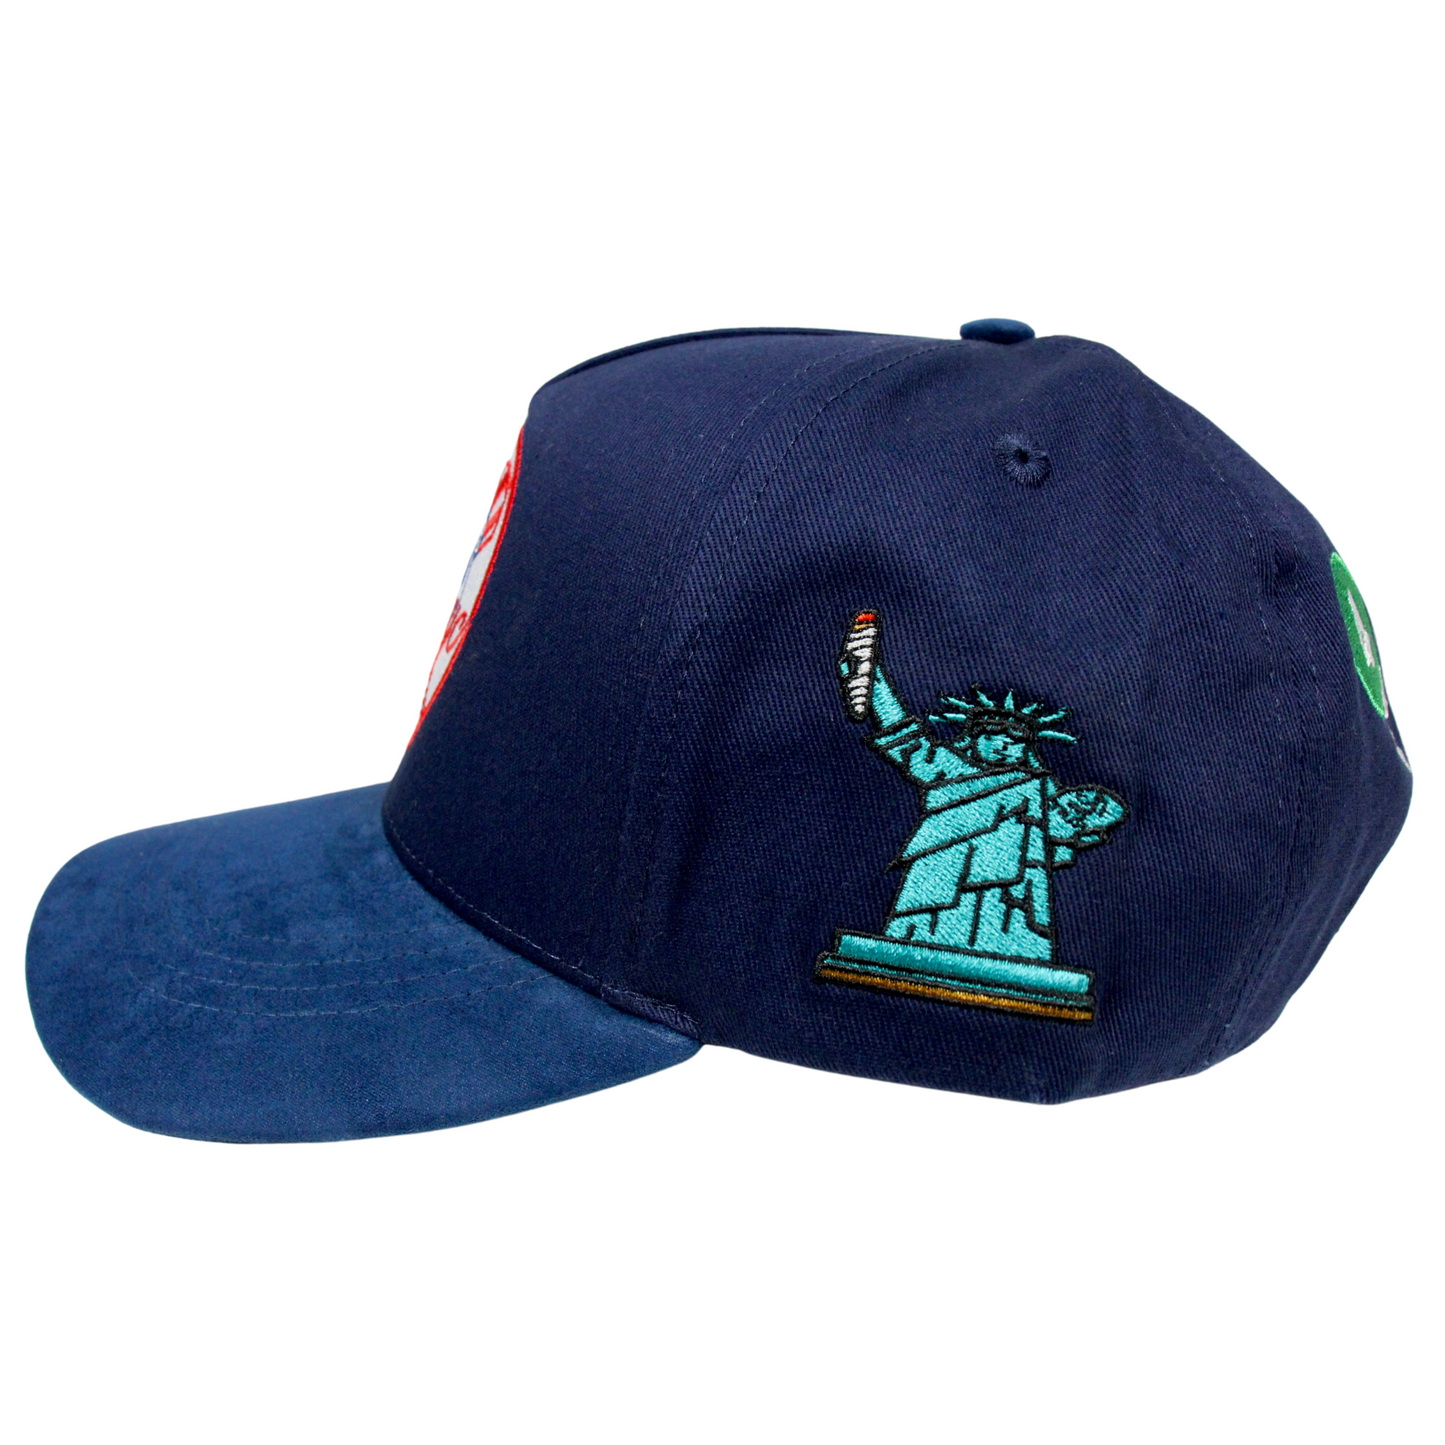 Gas NYC "4 Train" Hat